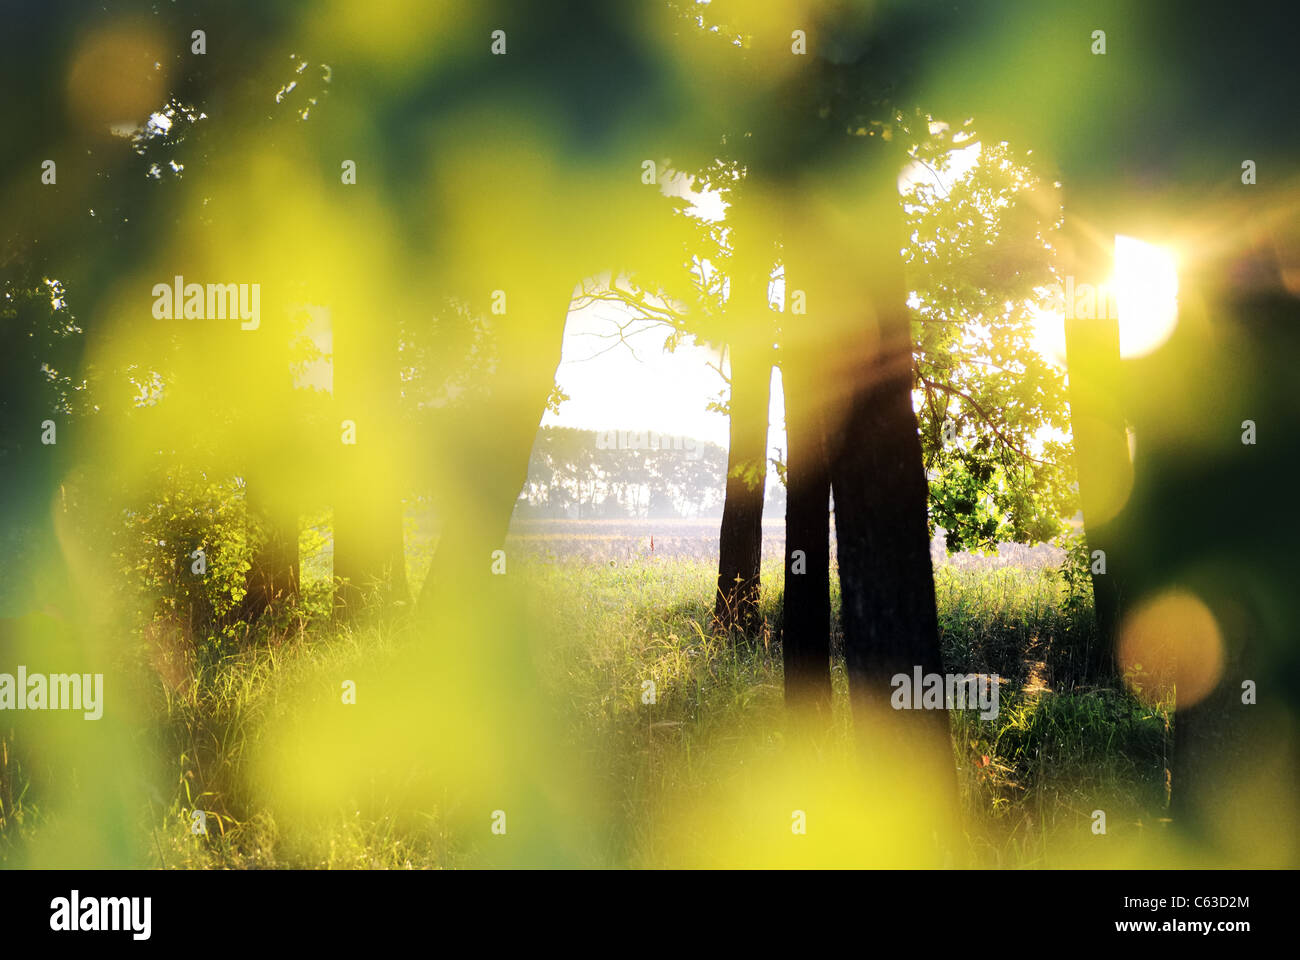 Sunday morning at oak grove, Ukraine, eastern Europe Stock Photo